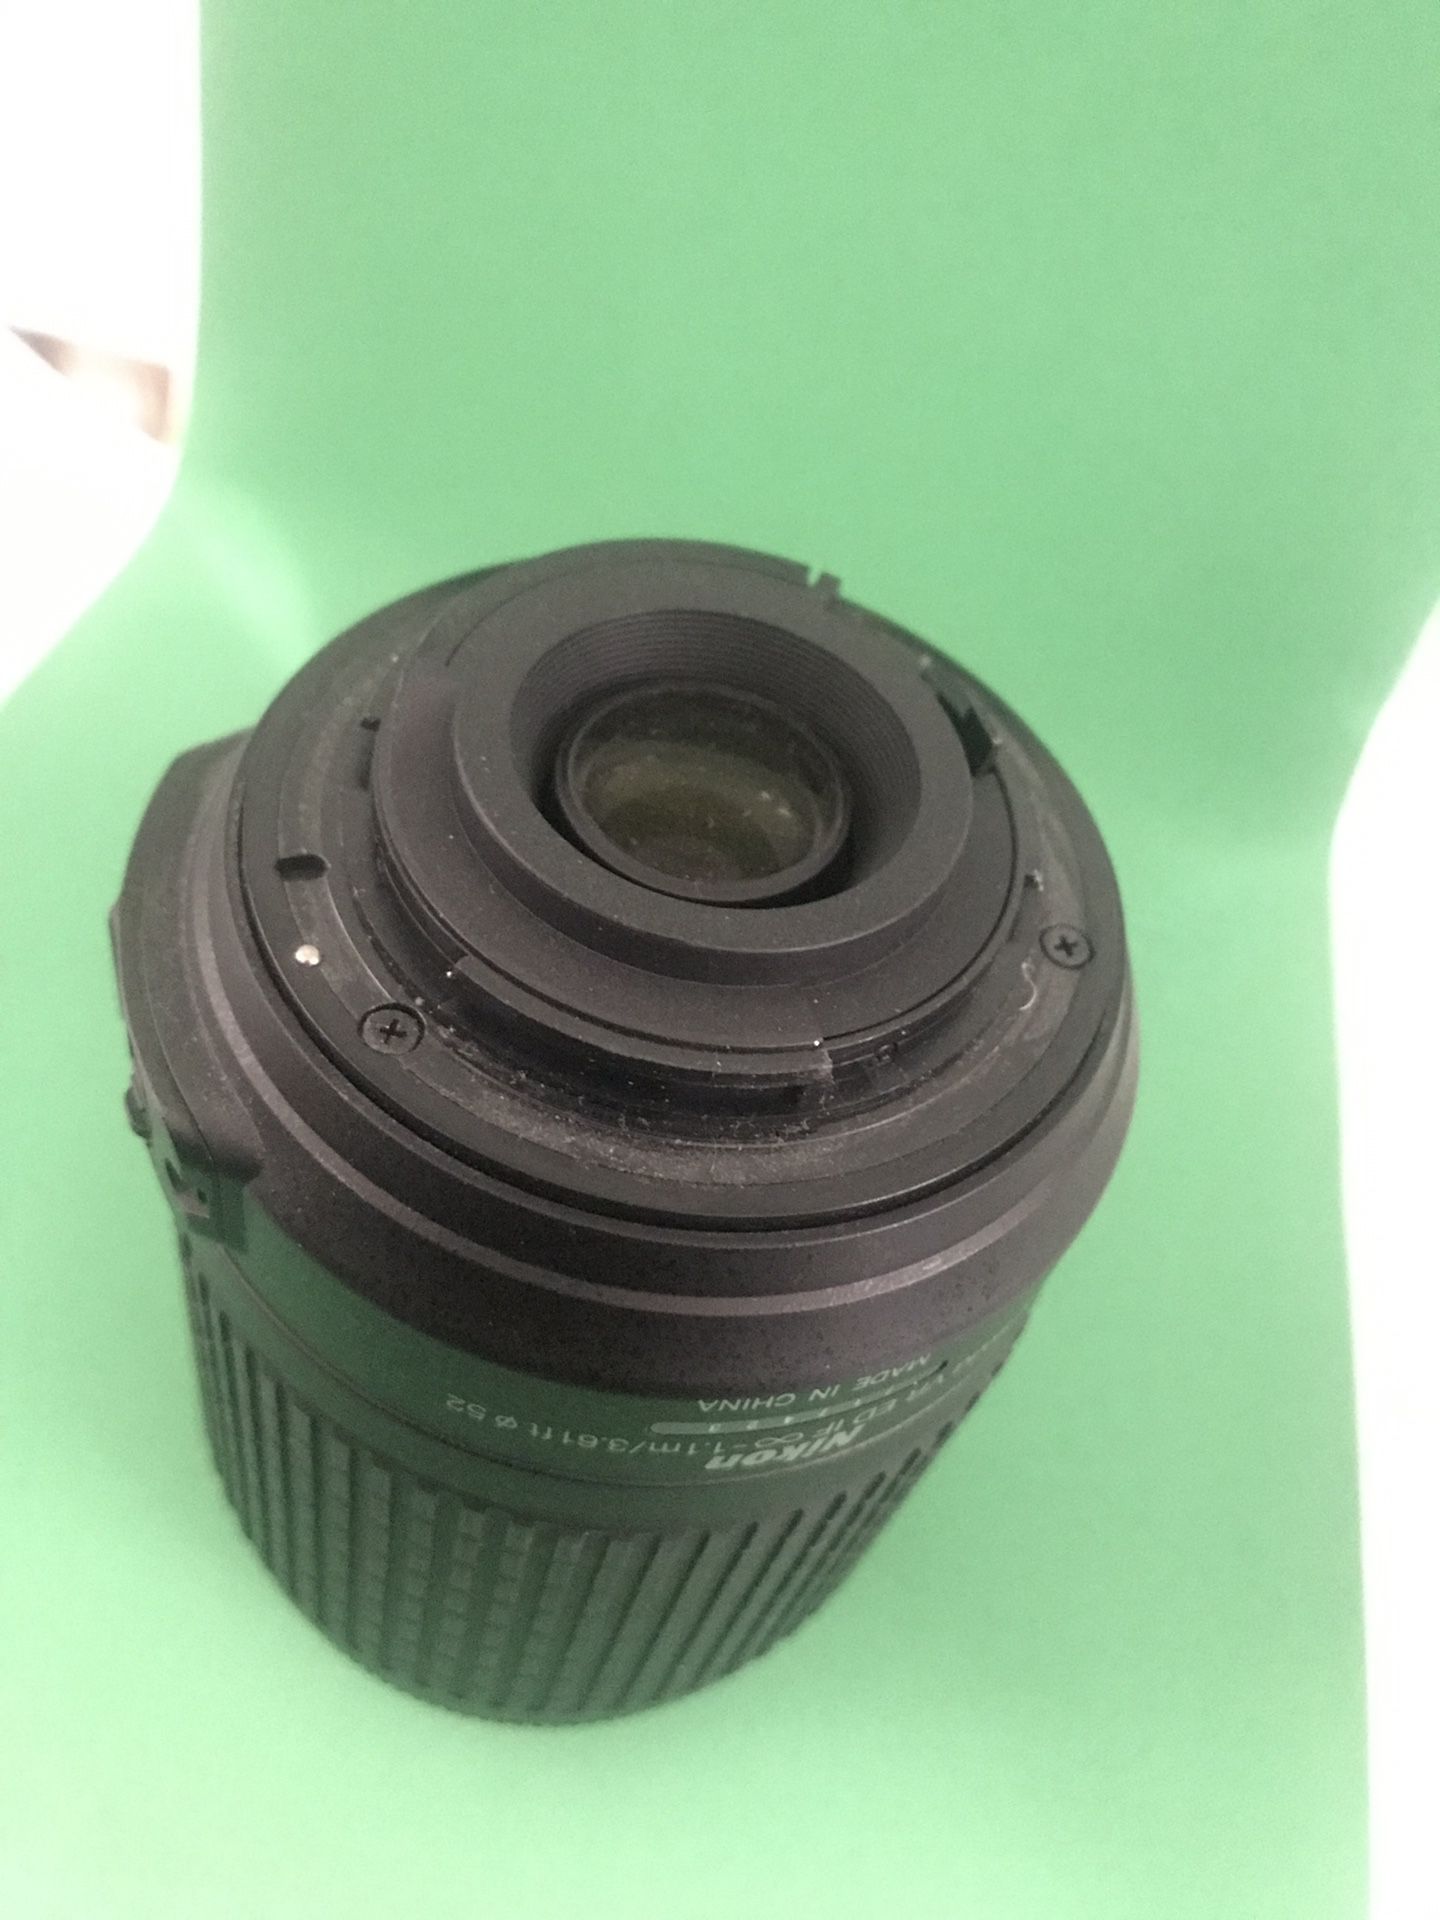 Nikon DX, AF-S Nikkor 55-200mm 1:4-5.6G ED, DX SWM ED Camera Lense